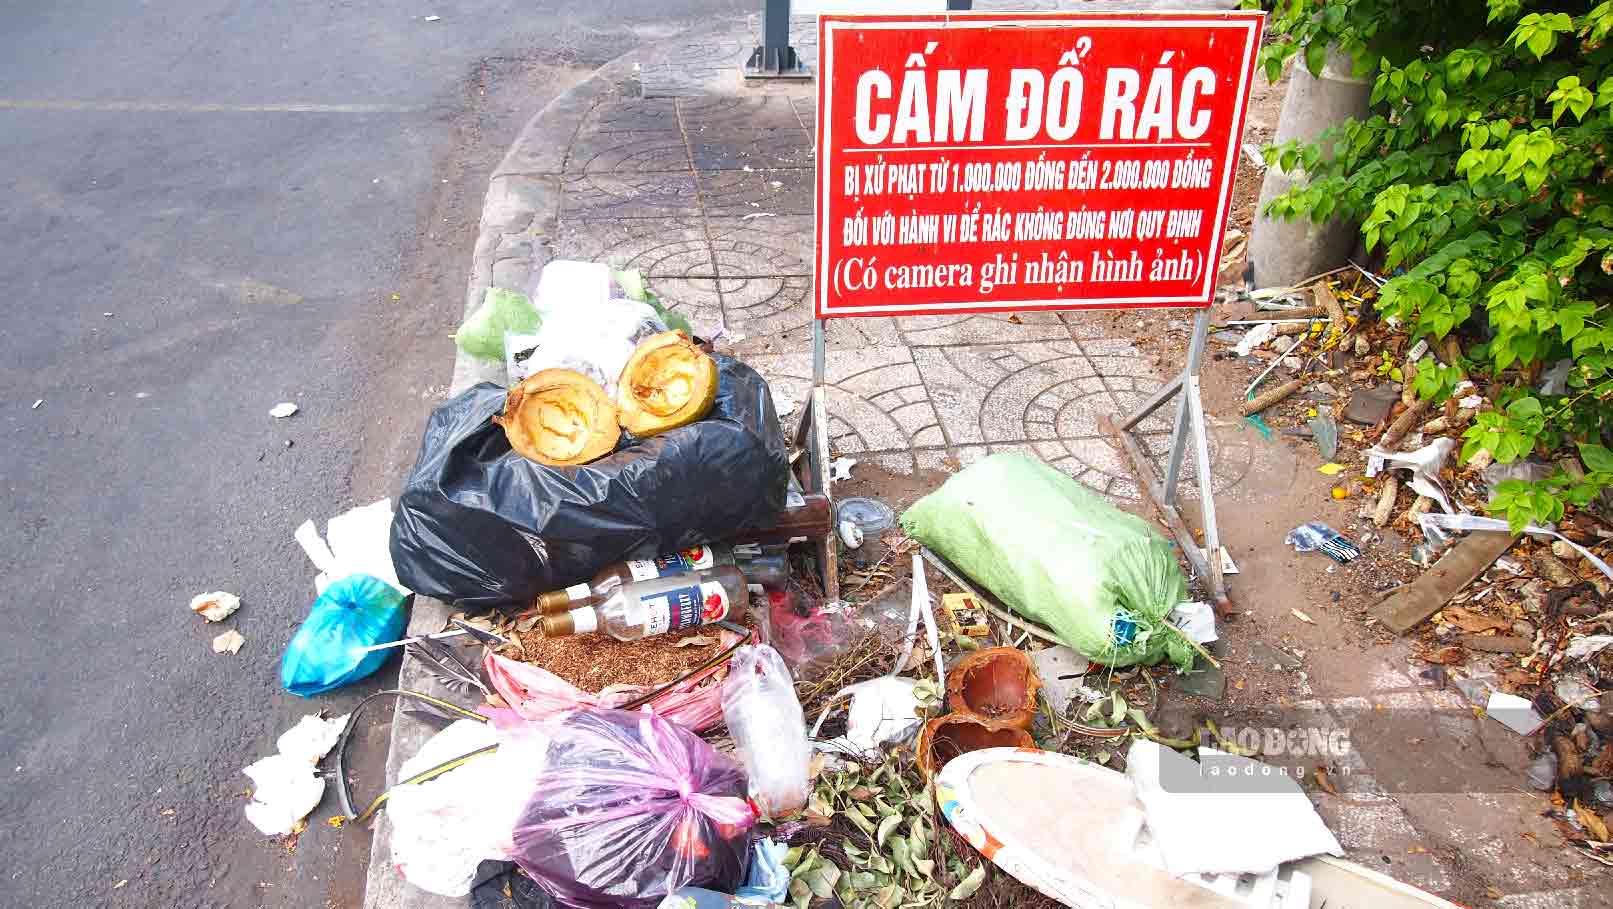 Điểm cấm đổ rác lại thành nơi để rác ở trung tâm thành phố Cần Thơ